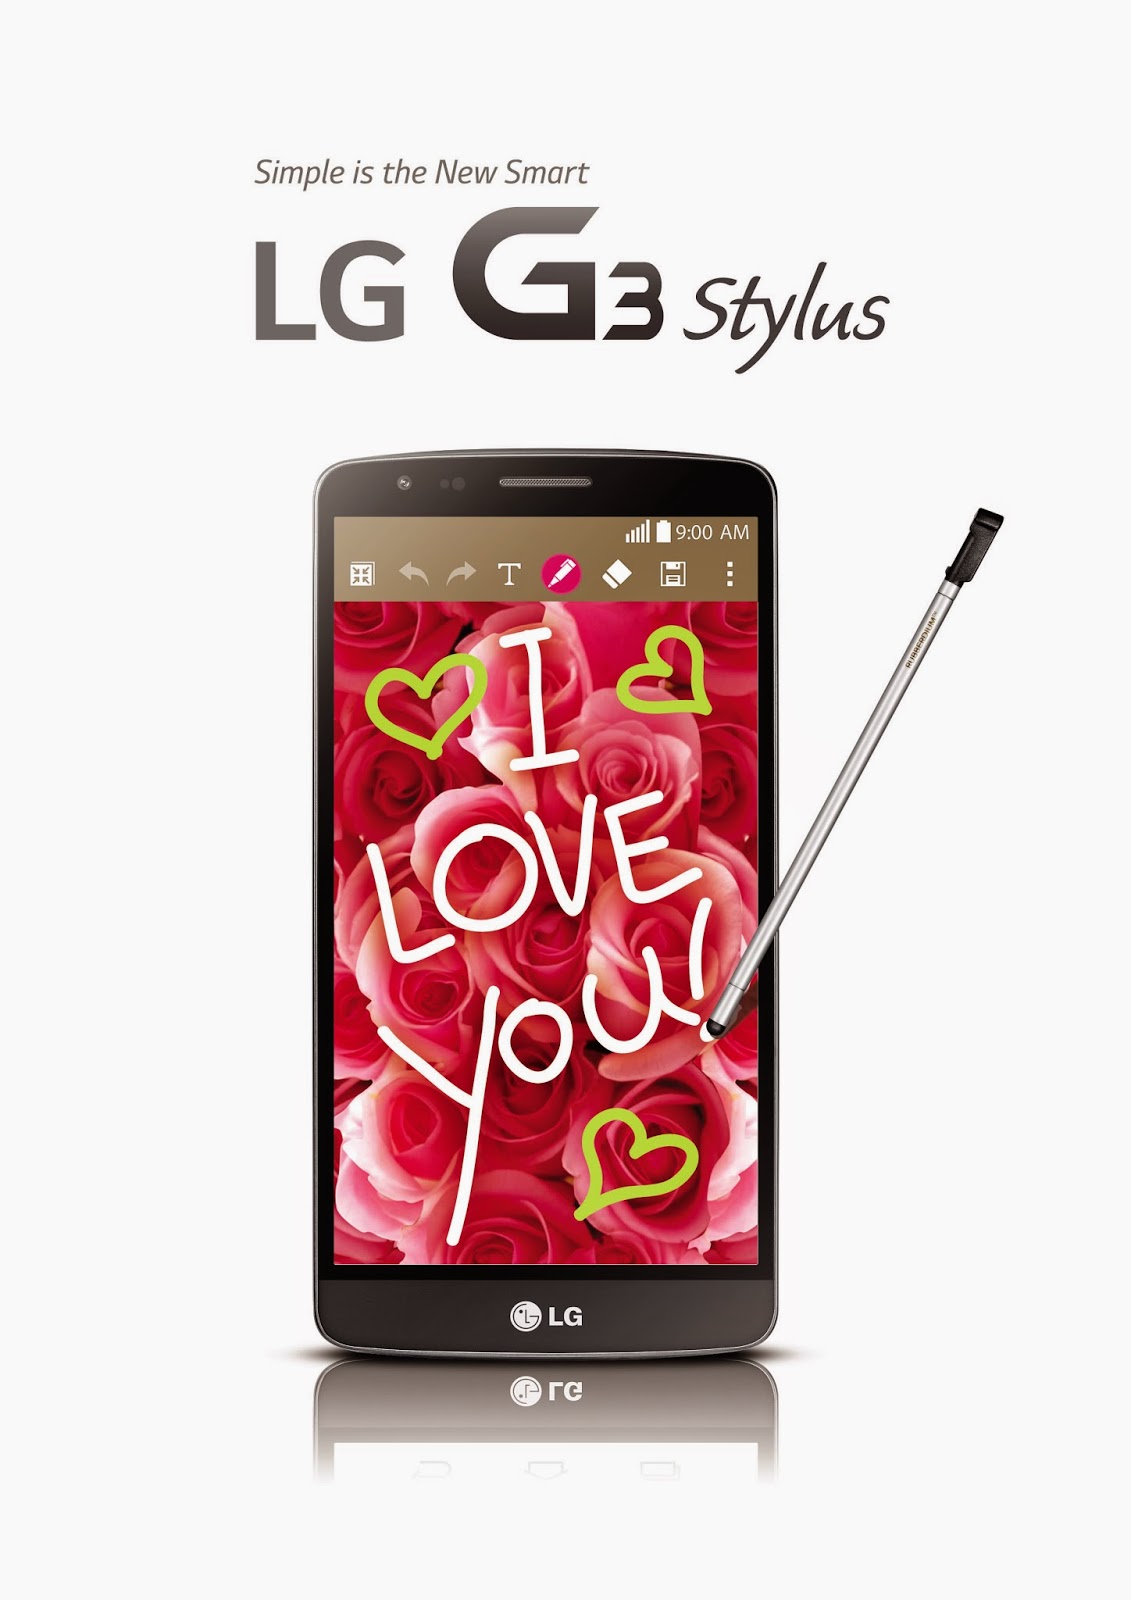 Smartphone hot nhất, LG G3 Stylus sở hữu bút Rubberdium công nghệ cao